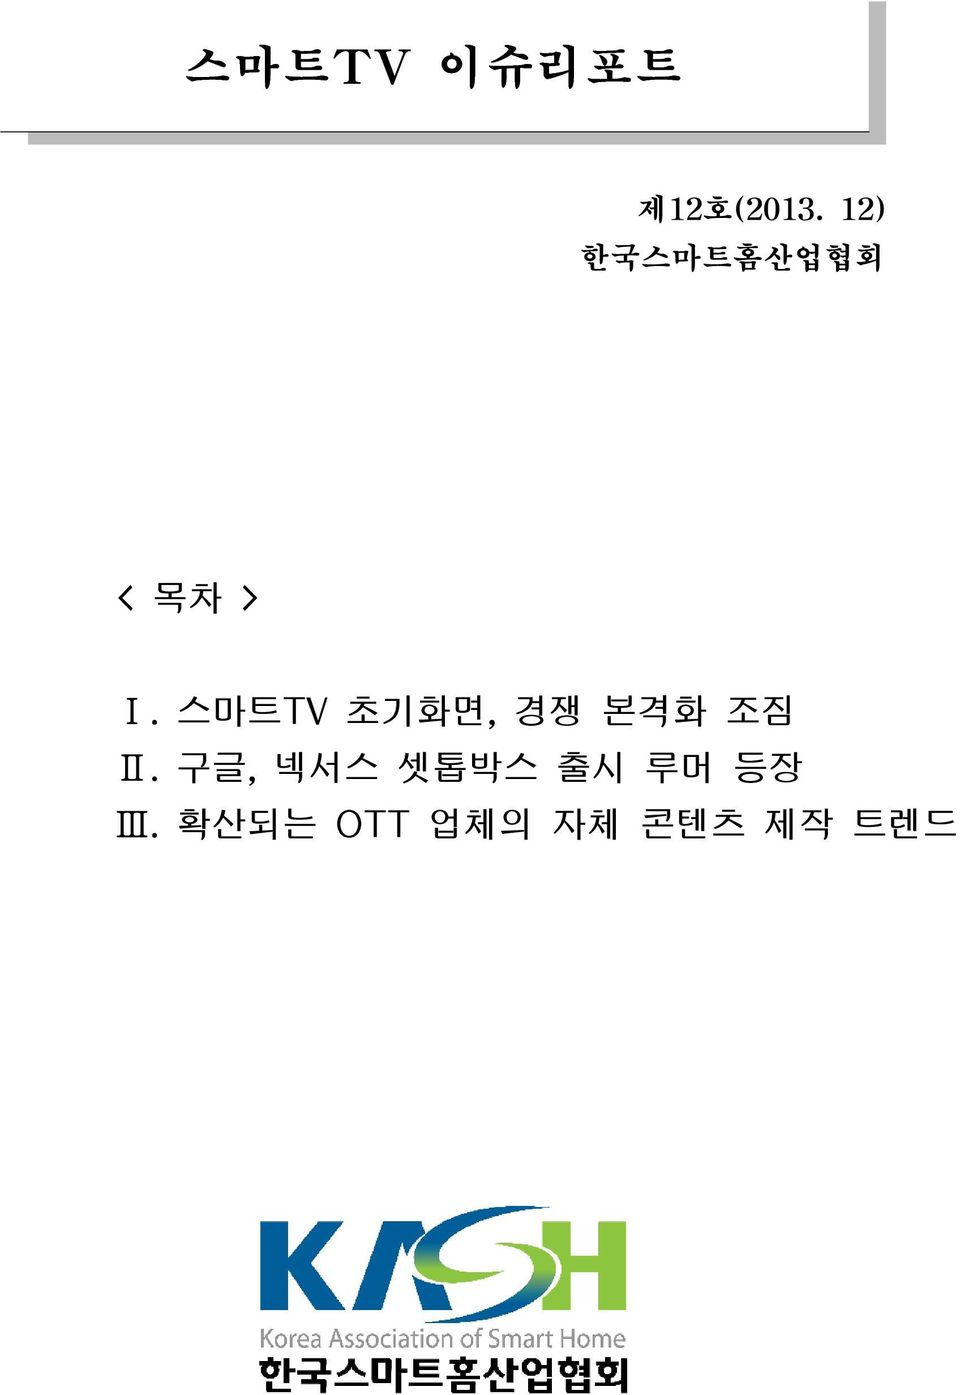 스마트TV 초기화면, 경쟁 본격화 조짐 Ⅱ.